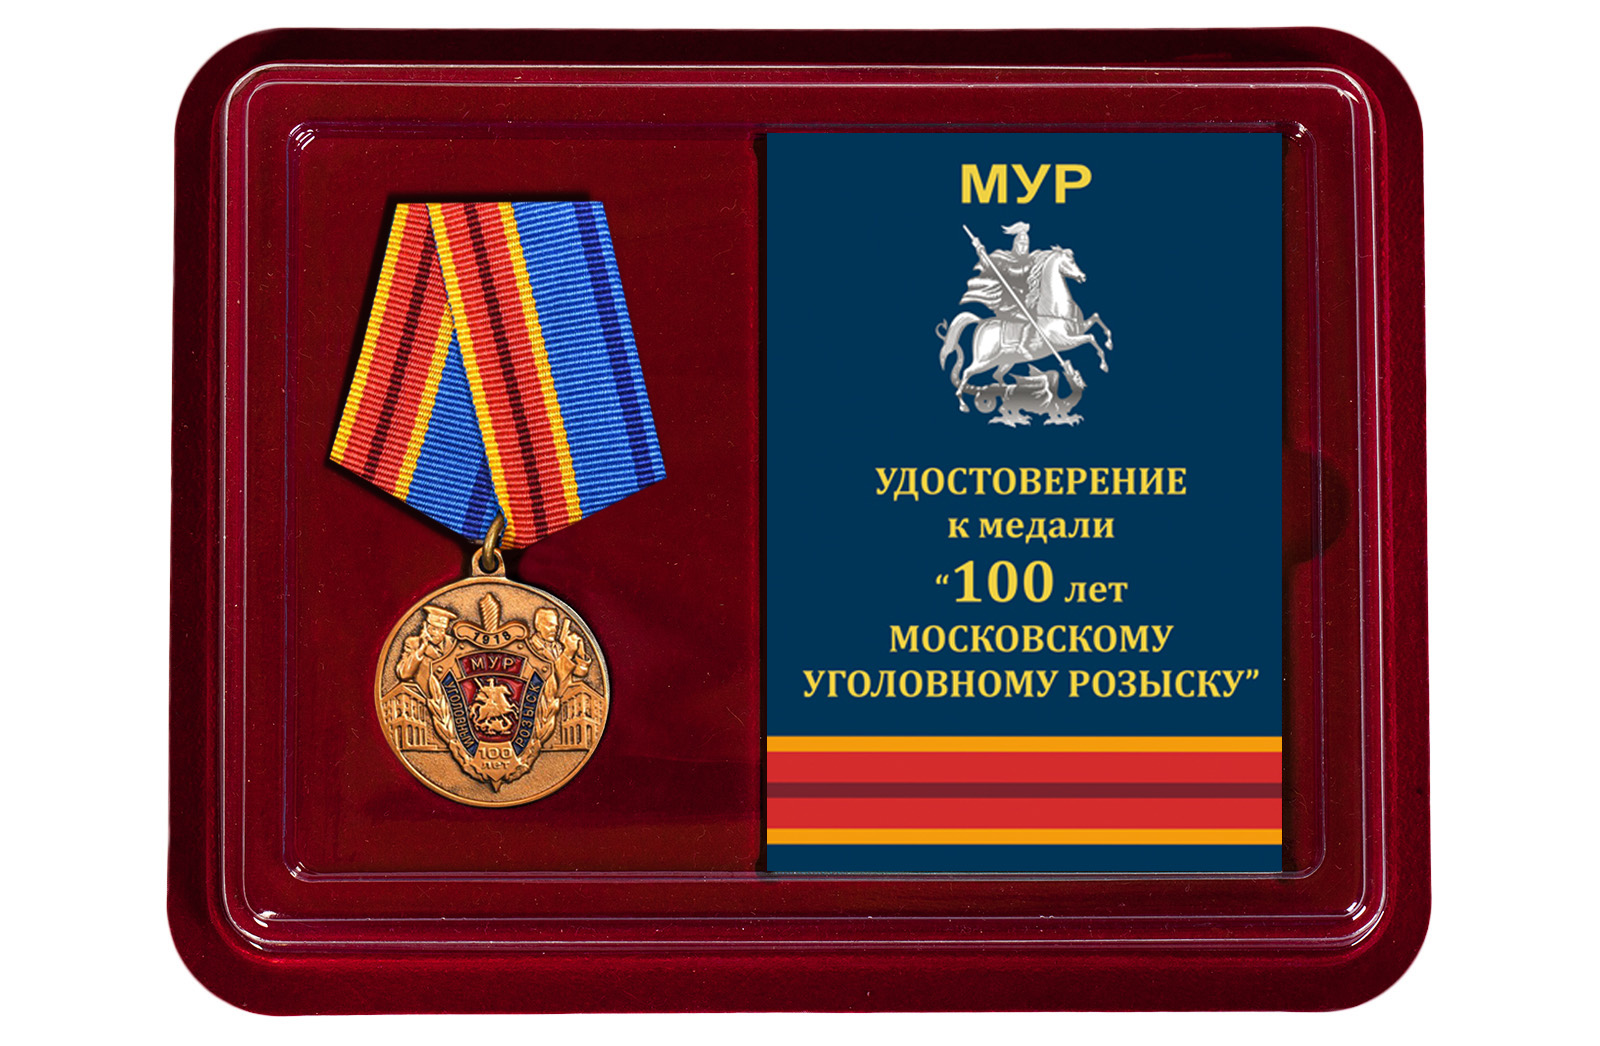 Купить медаль 100 лет Московскому Уголовному розыску в подарок